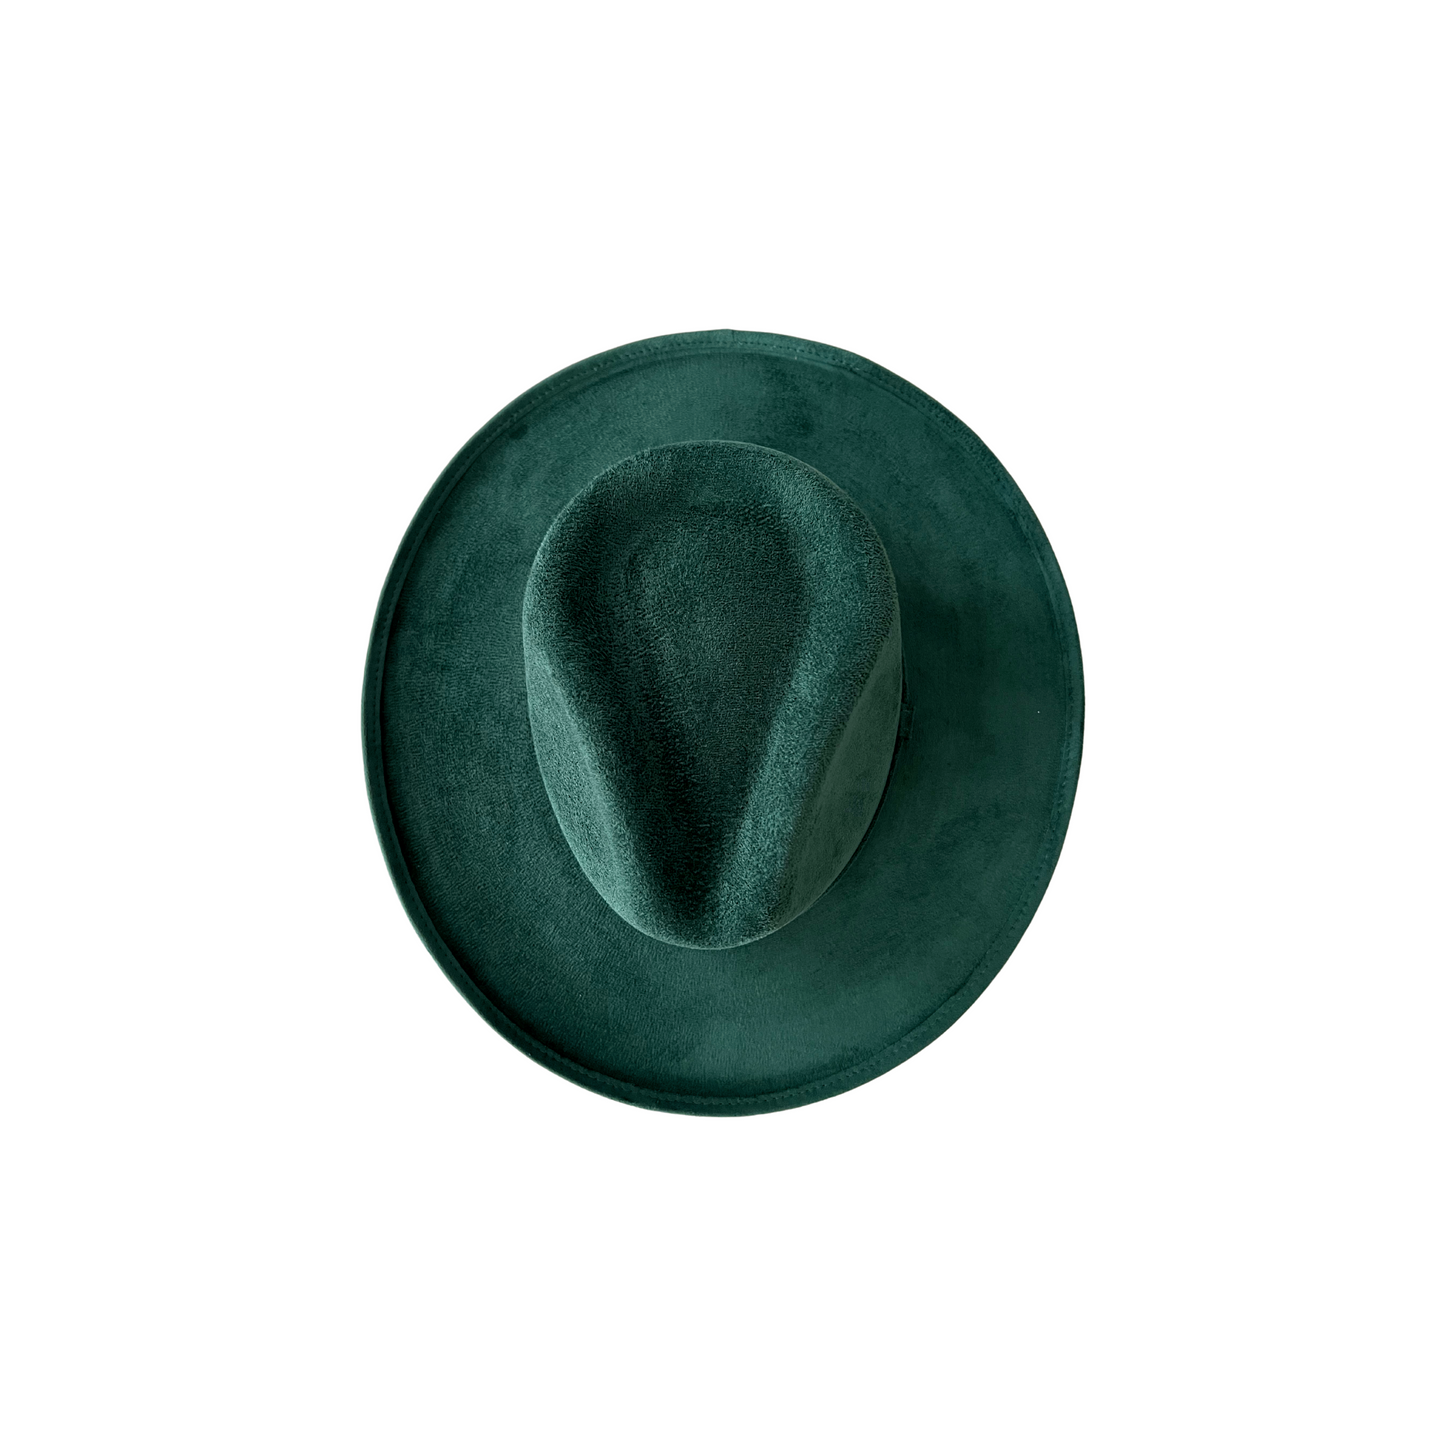 Blake Curled Pencil Brim- Emerald